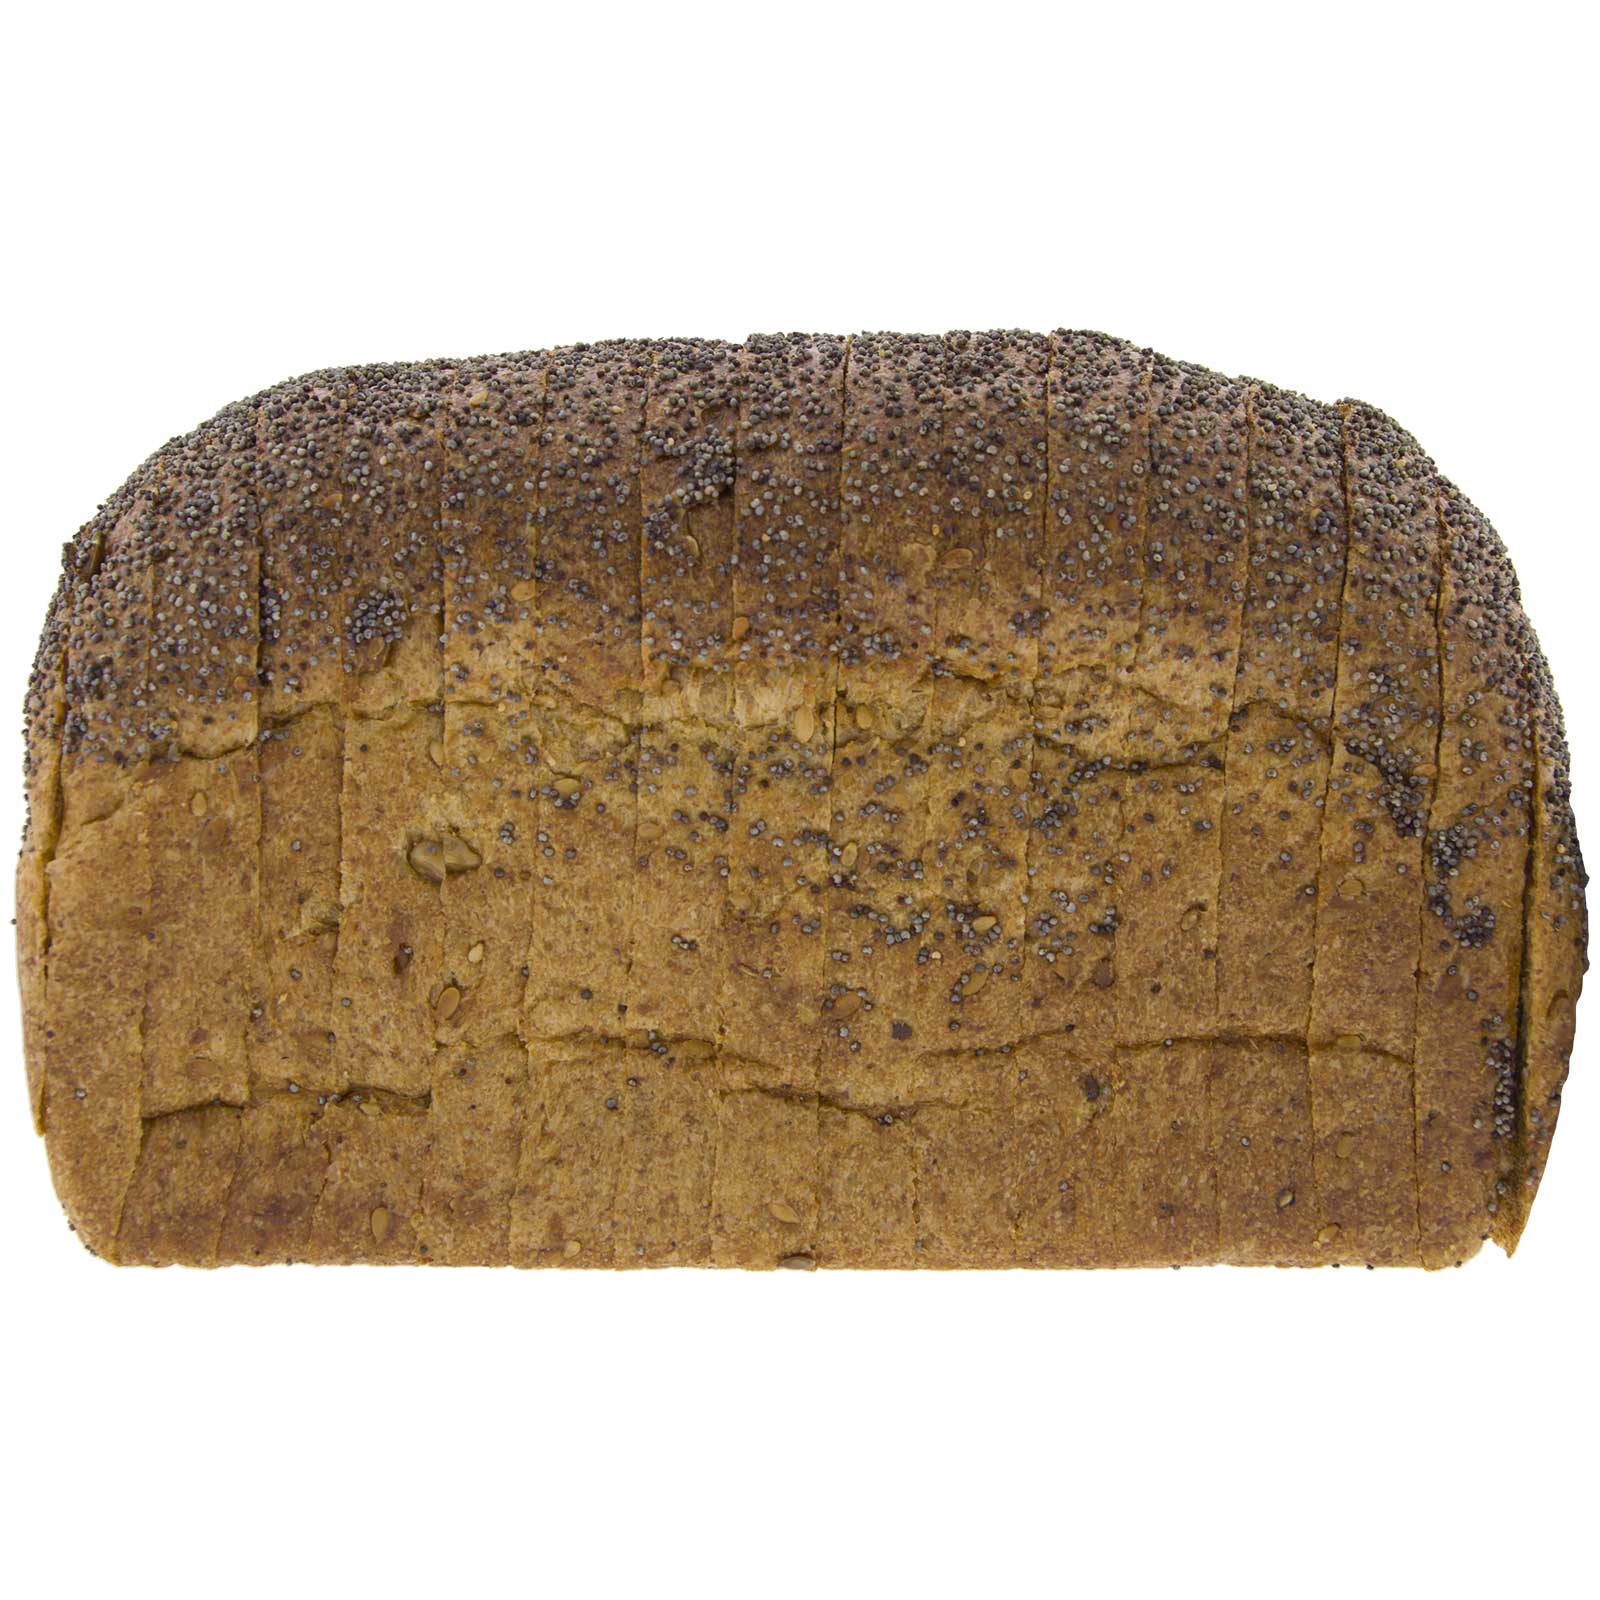 Pan de Molde de Centeno Integral con Semillas 450g Ecológico